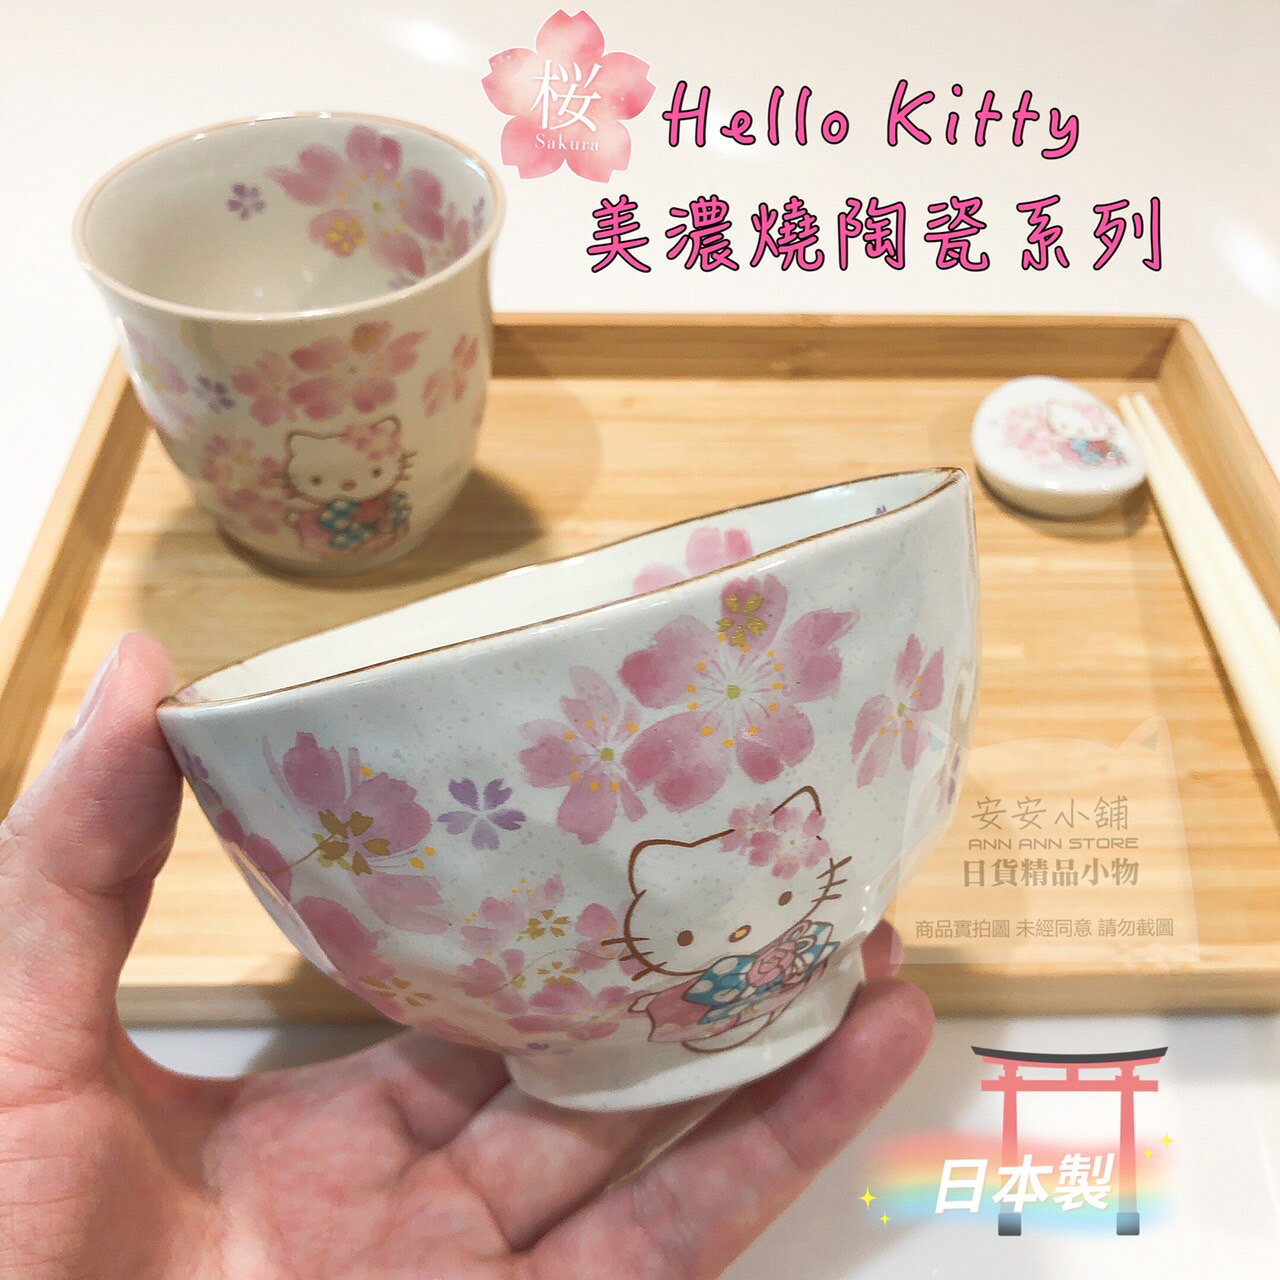 日本製 櫻花版Hello Kitty美濃燒陶瓷系列 kitty凱蒂貓 櫻花 日本陶瓷碗 日本筷架 日本茶杯 質感超級好